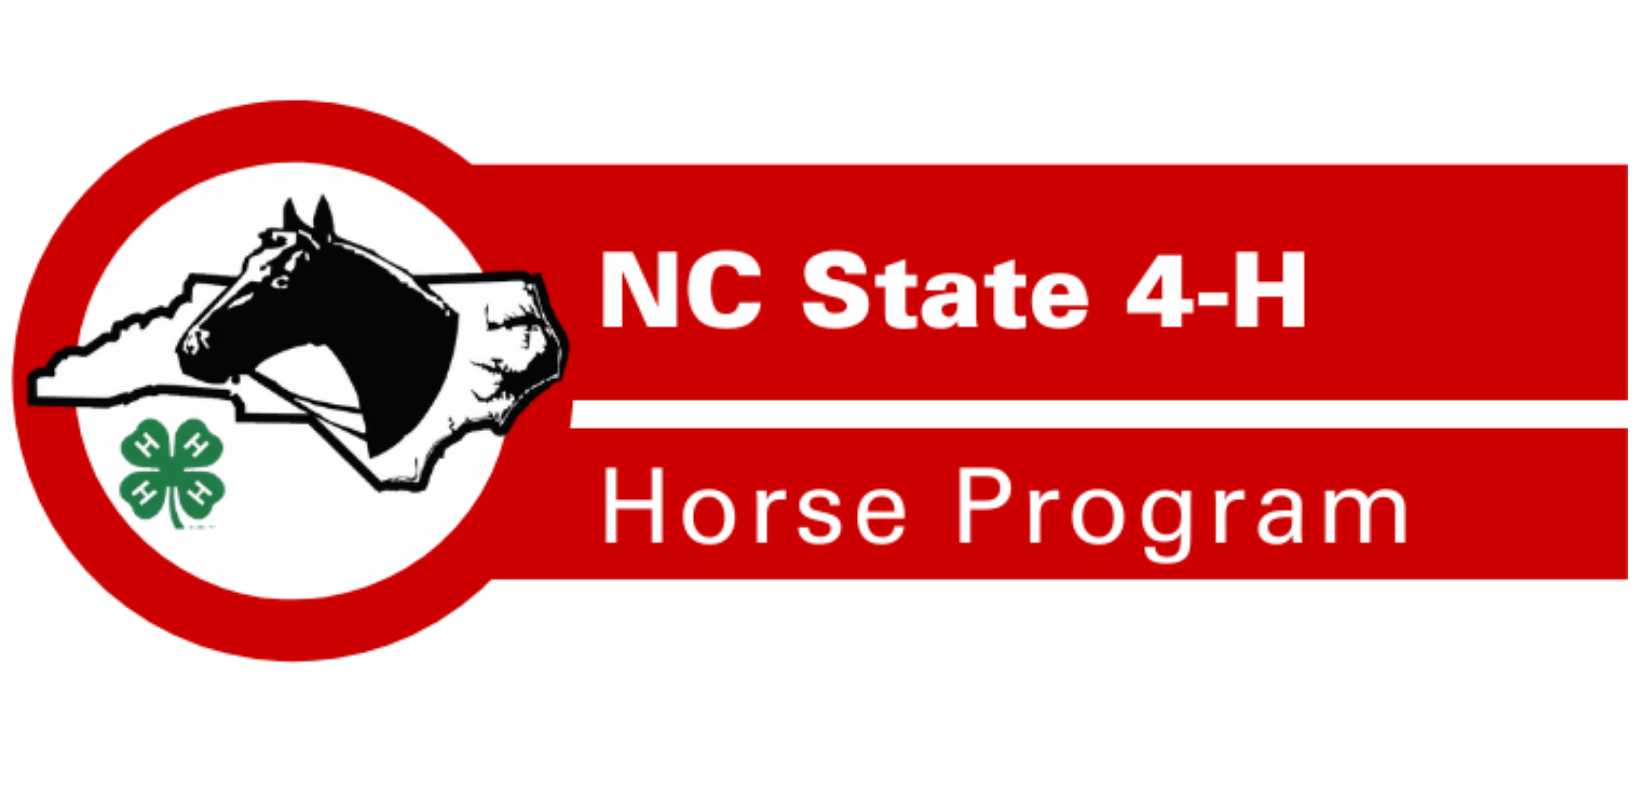 Ncsu Calendar Fall 2022 2022 Nc 4-H Horse Program Calendar Of Events | Nc State Extension